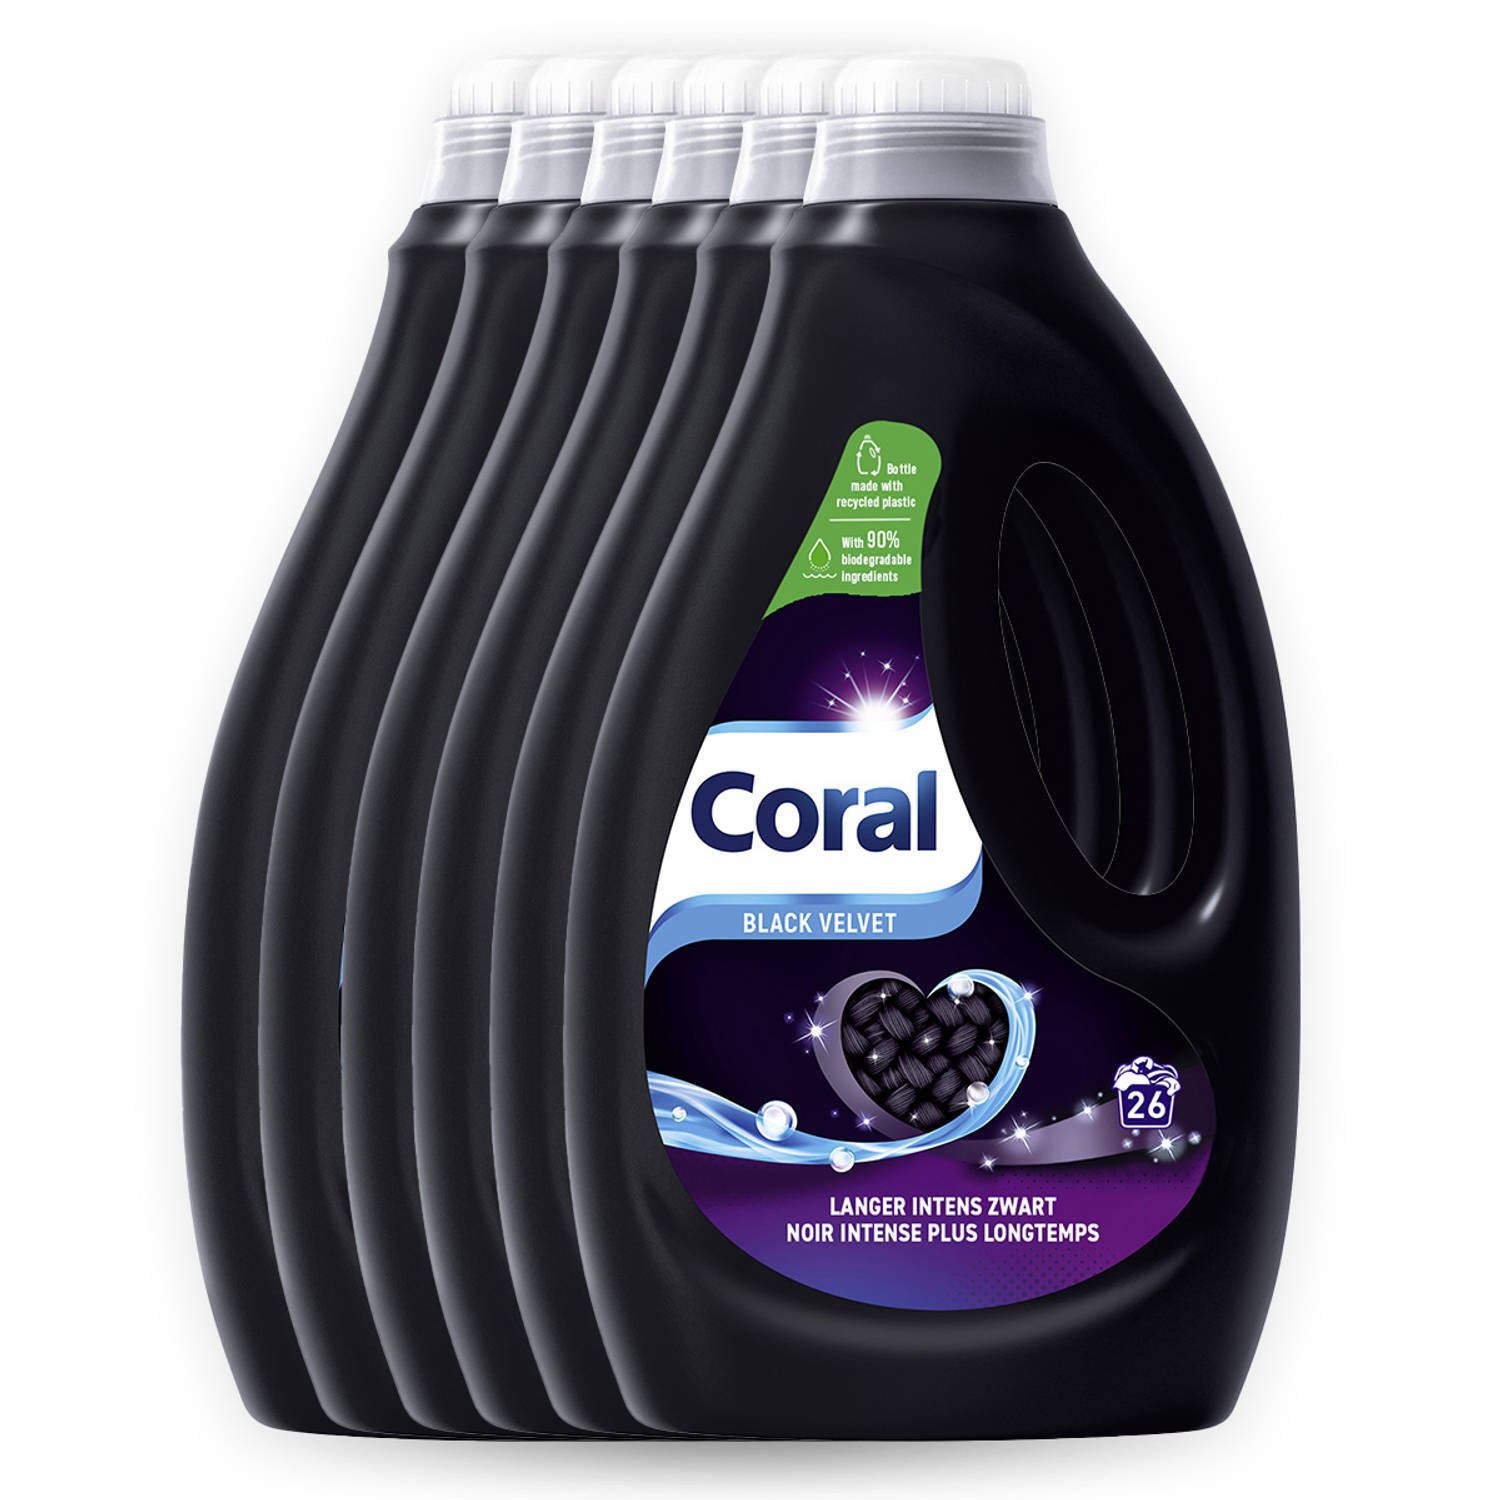 Coral Black Velvet (6 x 1,17L)